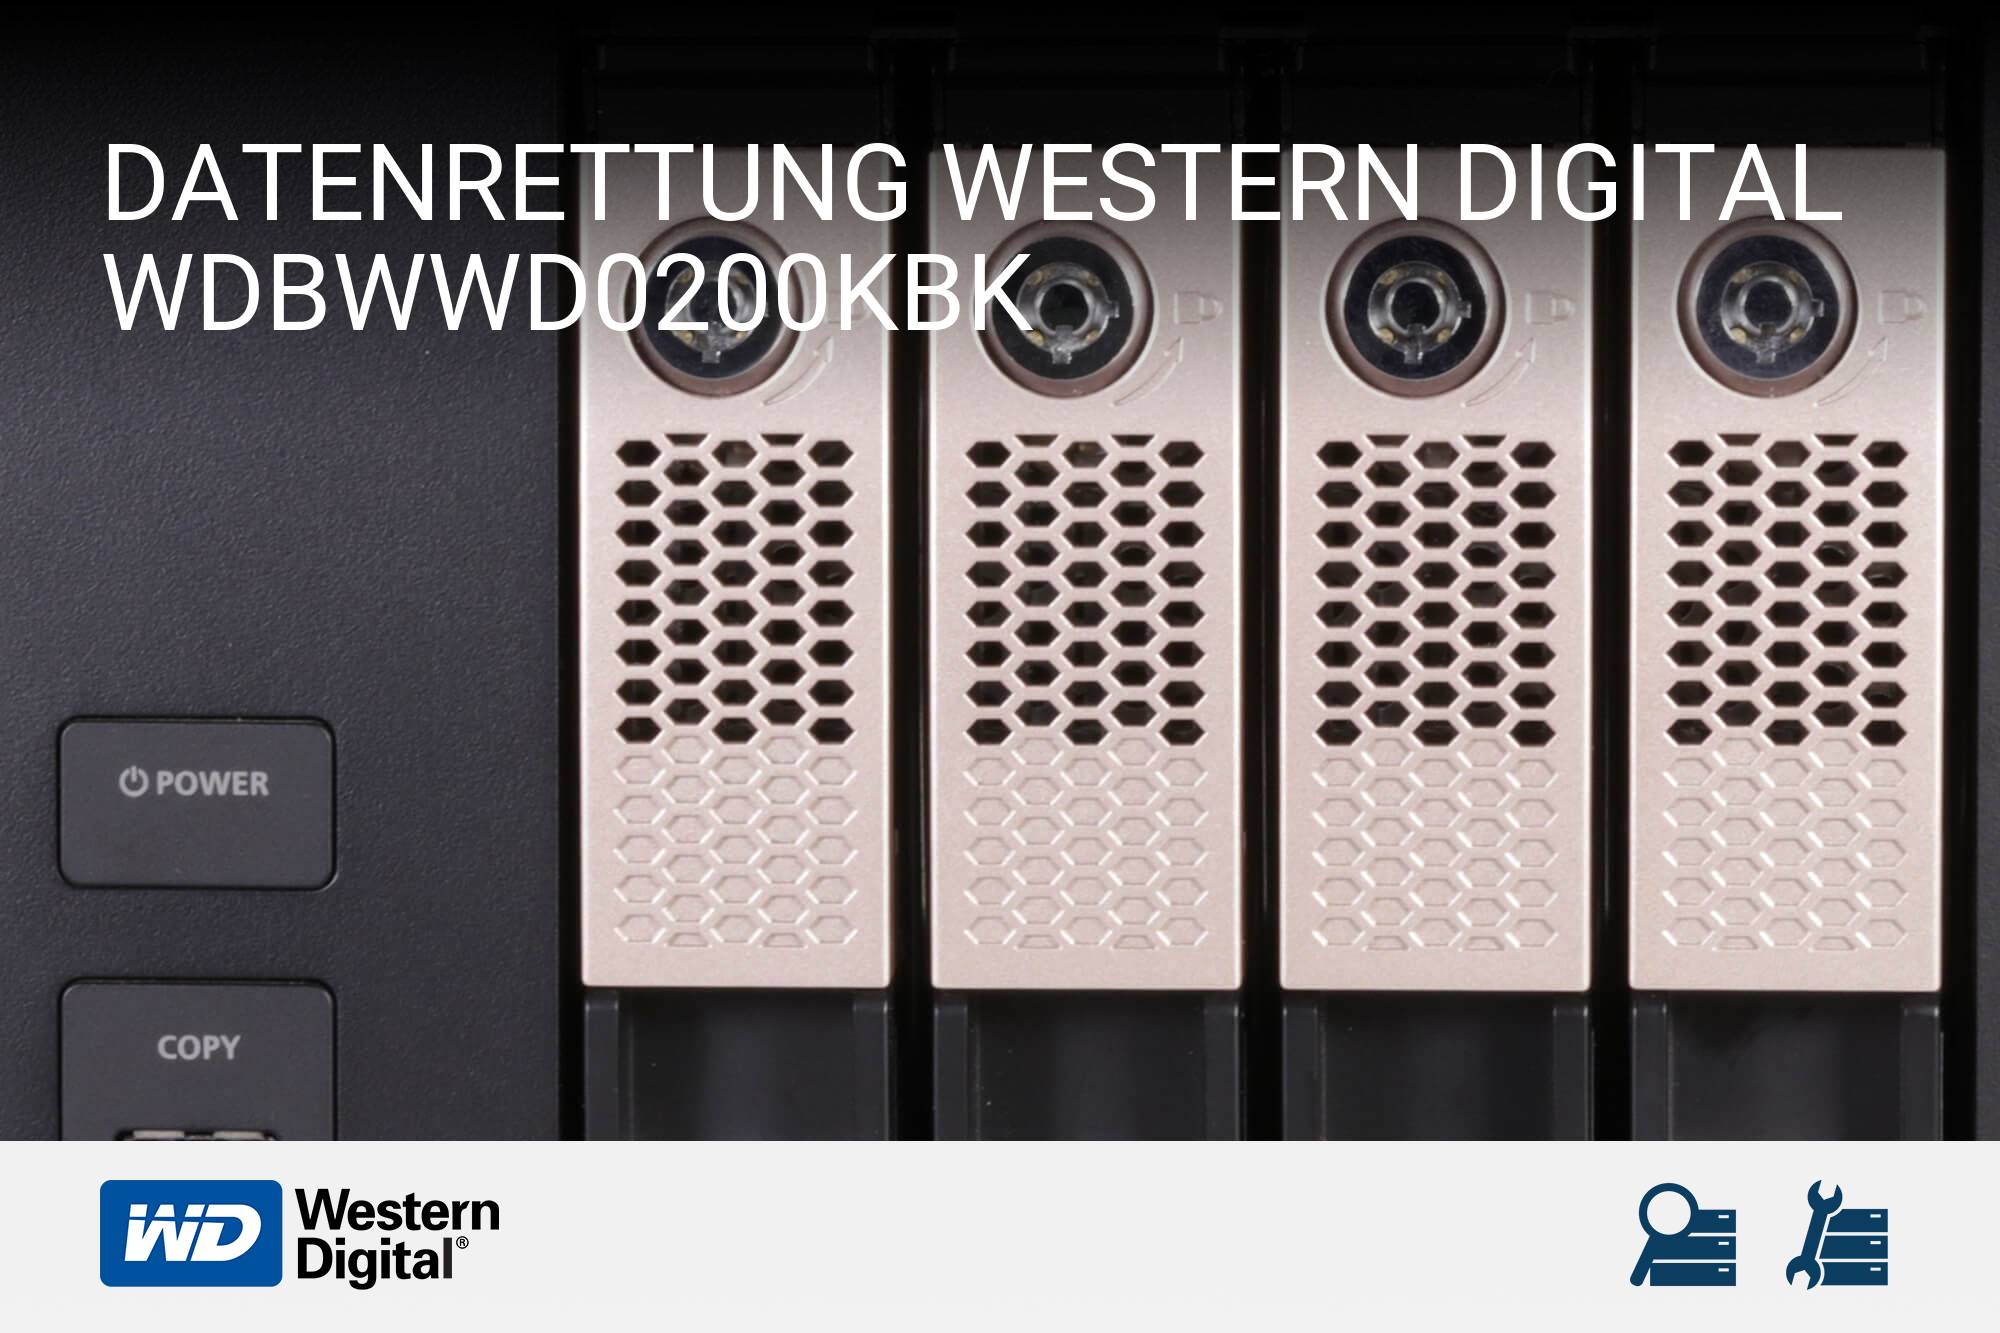 Western Digital WDBWWD0200KBK